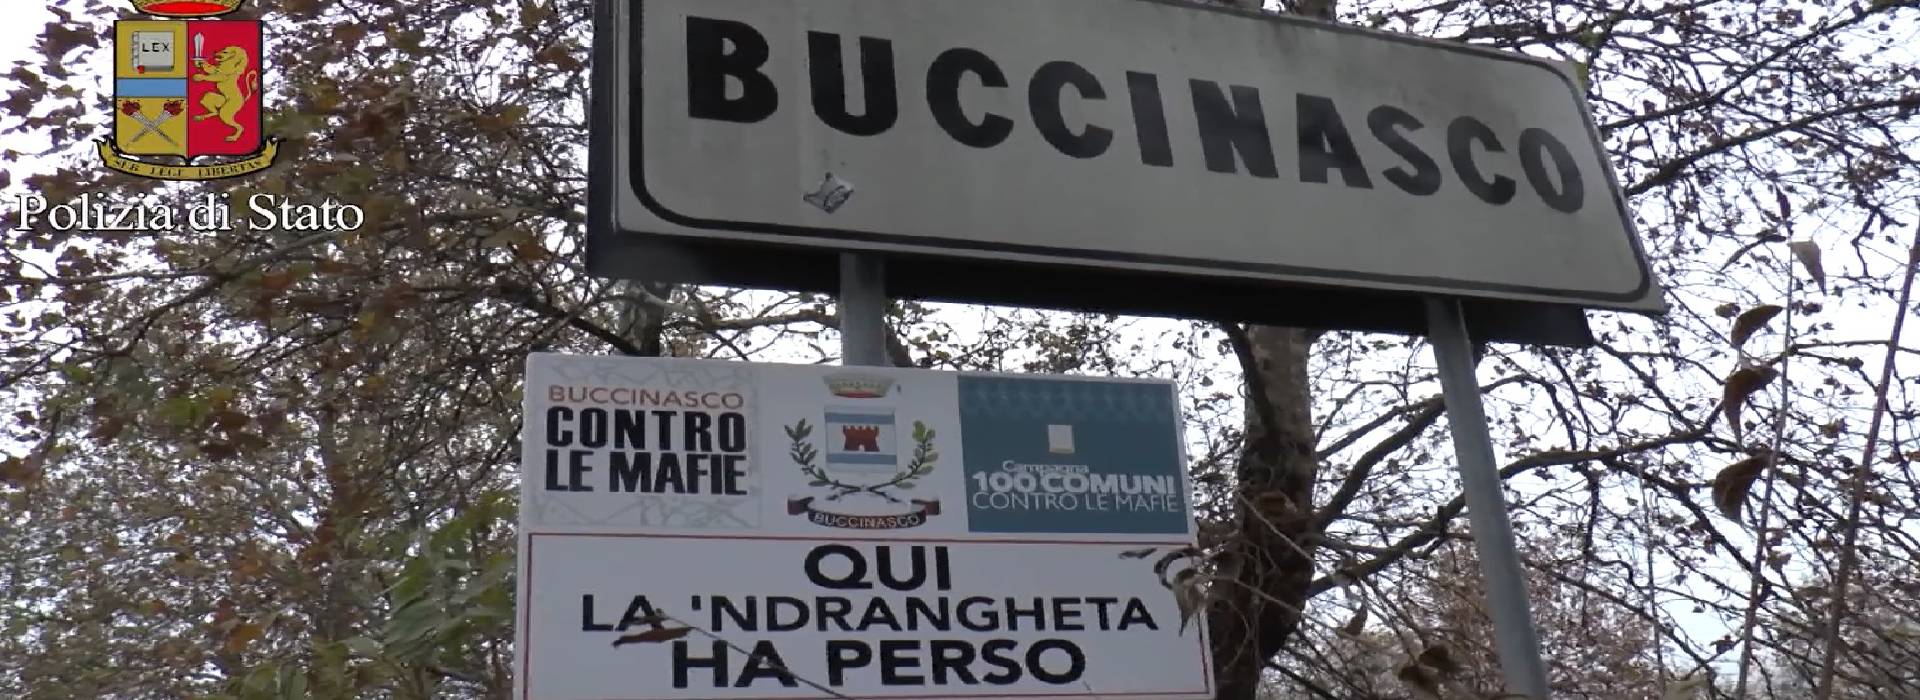 Buccinasco: da capoluogo della ’ndrangheta al Nord a cassaforte dei segreti della Quinta mafia.